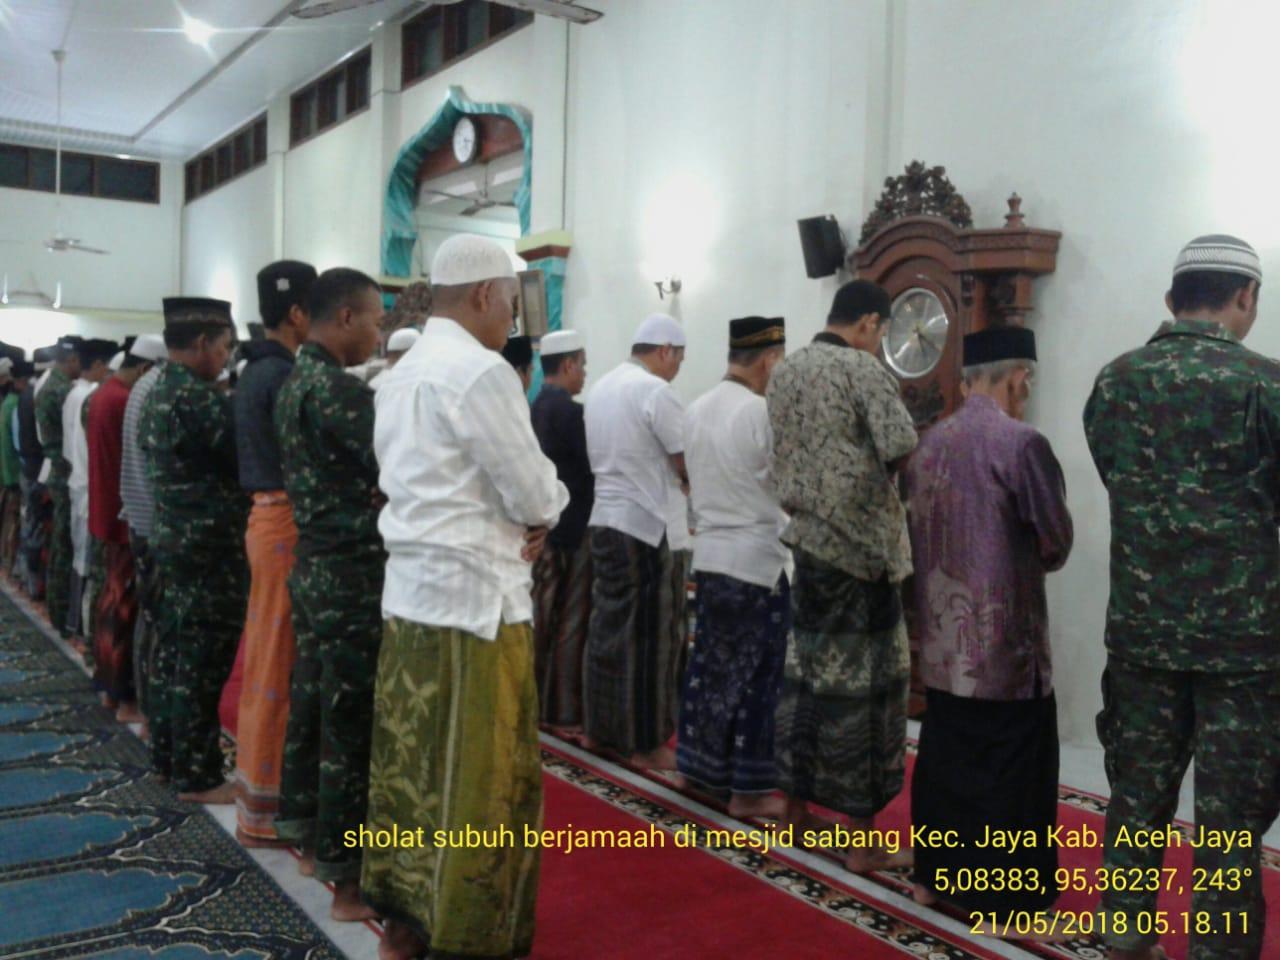 Bulan Puasa Kodim Aceh Jaya Semakin Gencar Laksanakan Manungal Subuh